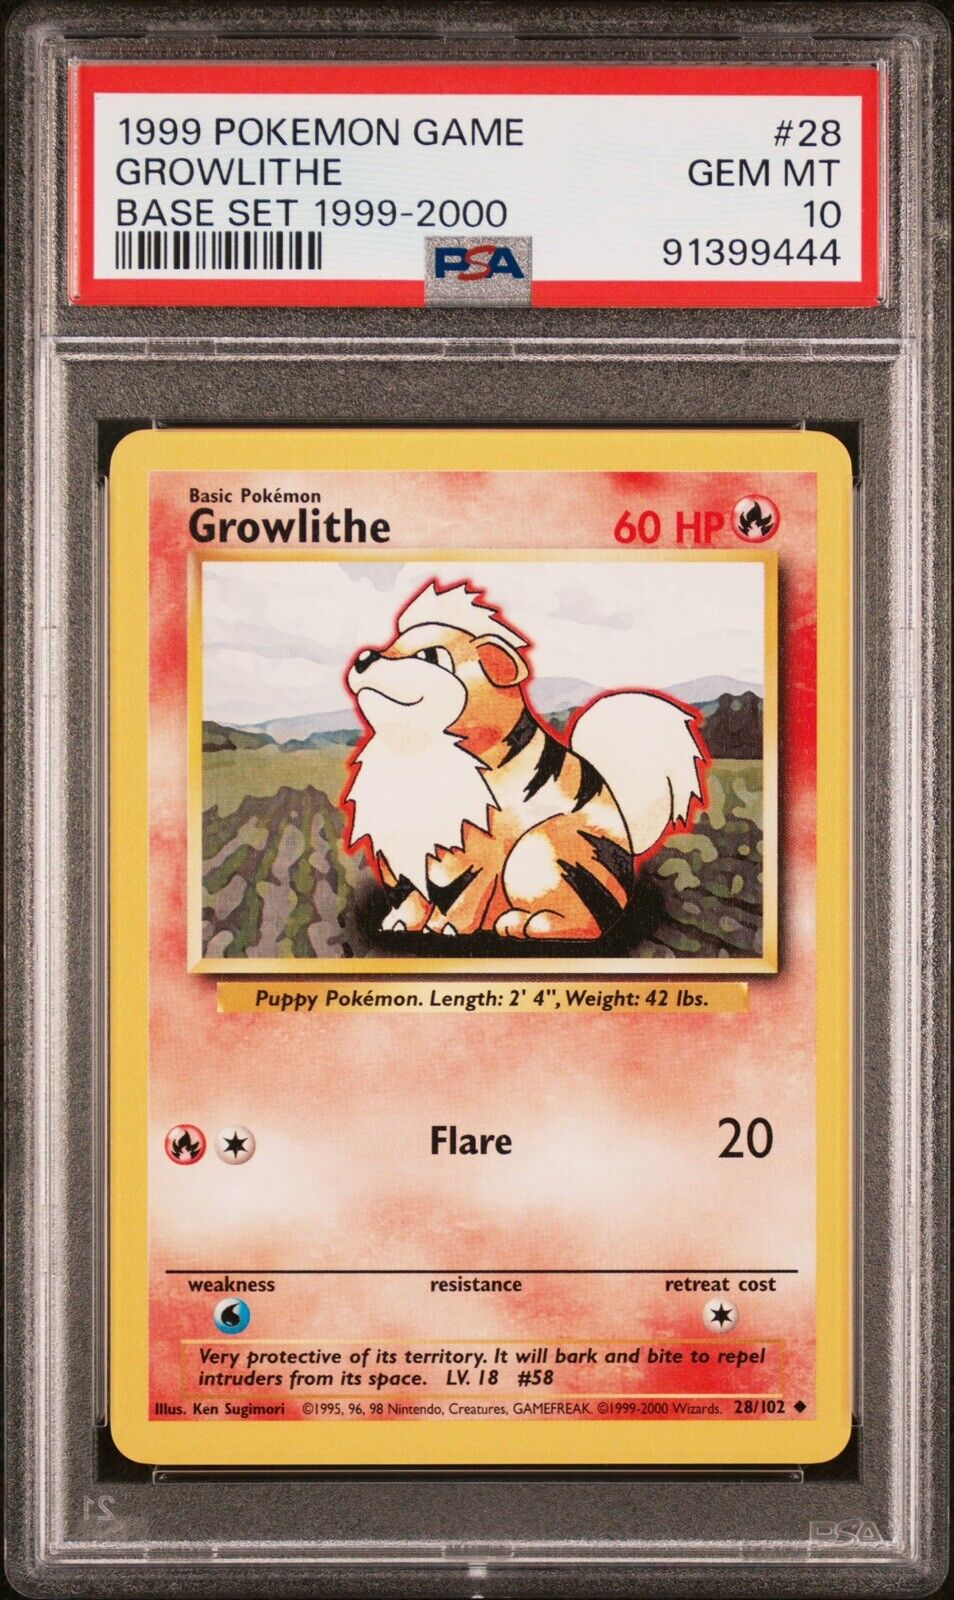 1999-2000 Pokemon Card (UK 4th print) - Growlithe - 28/102 - Base Set - PSA 10